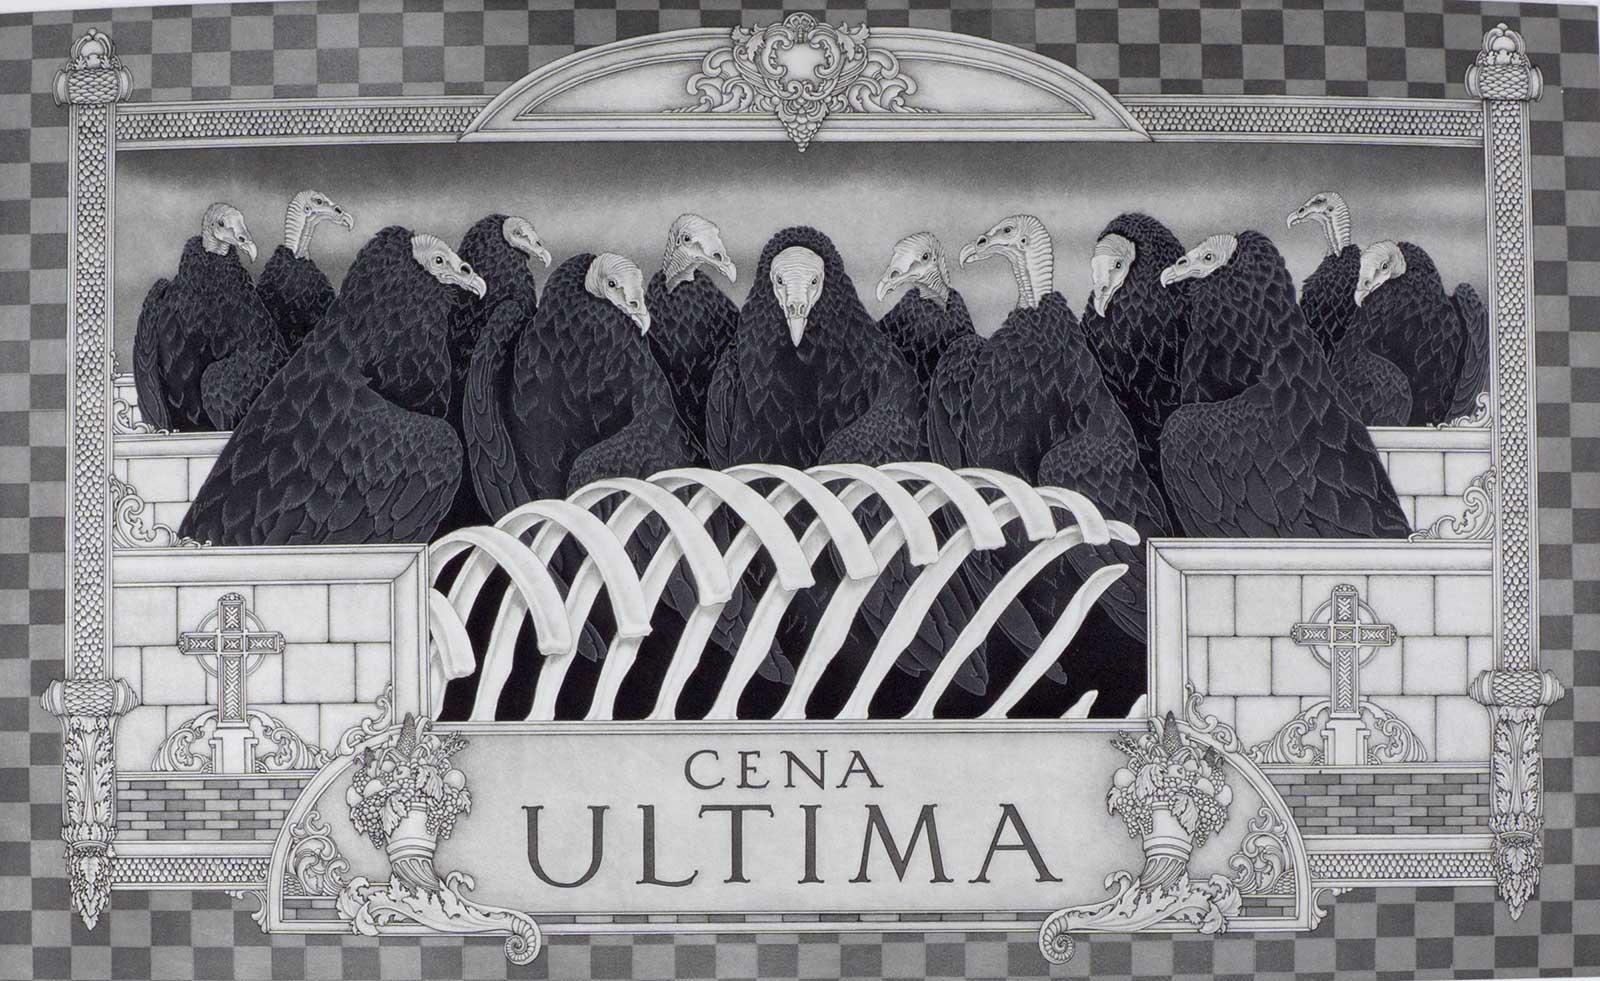 Cena Ultima (Los Buitres de Guinea representan a los apóstoles en esta versión de la Última Cena)